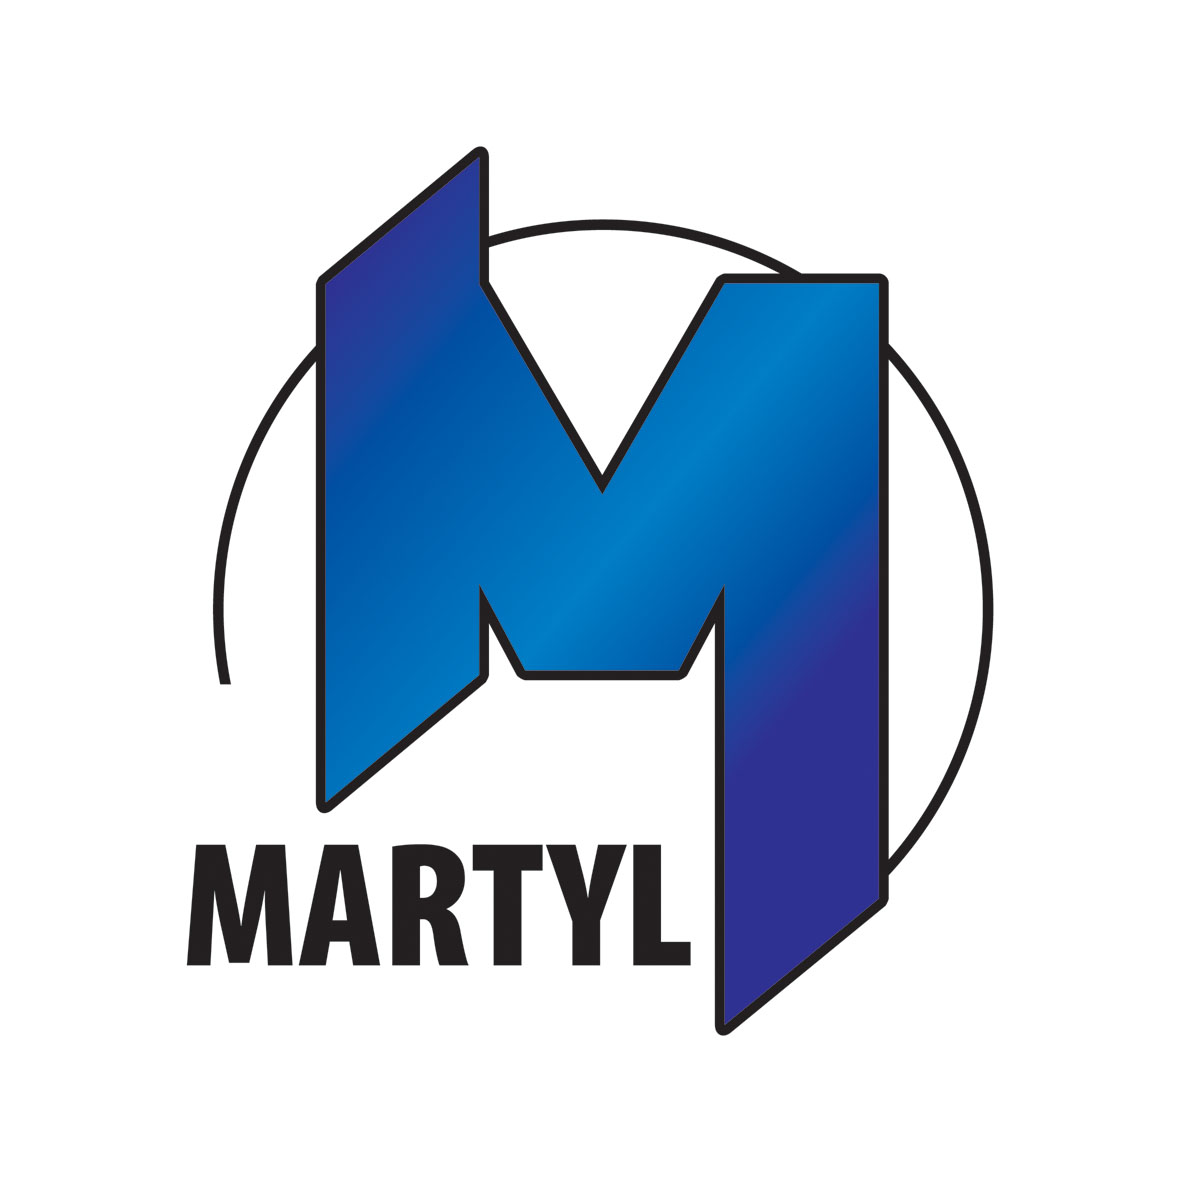 martyl logotype